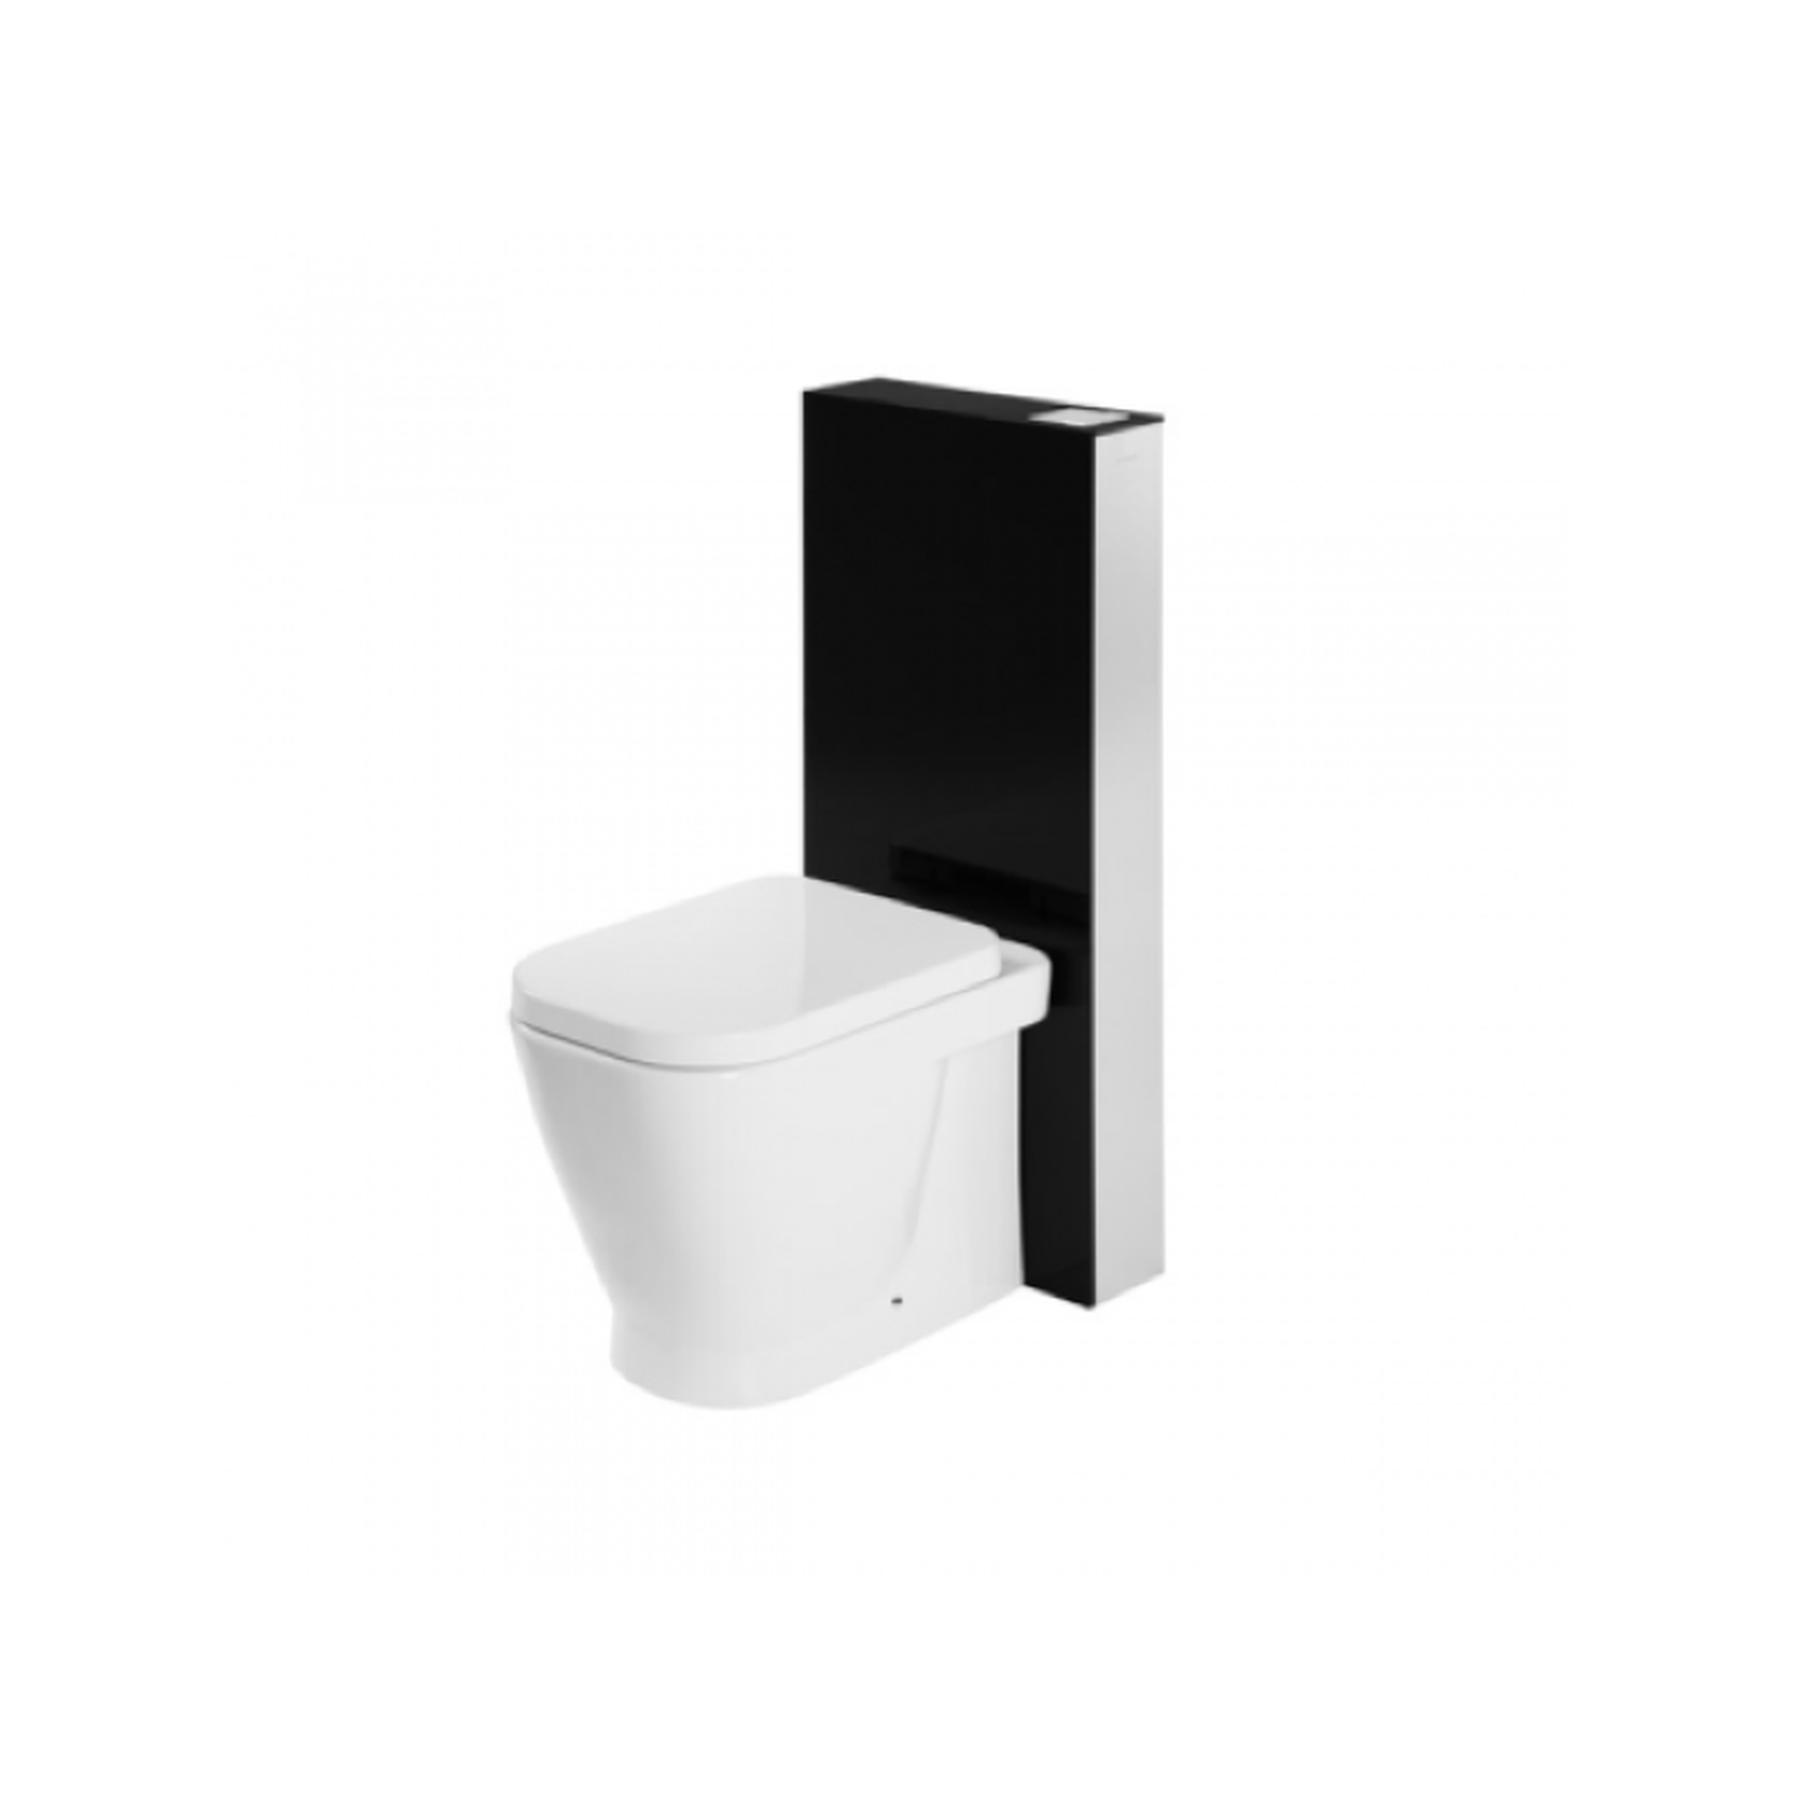 Panneau acrylique SANGLASS avec réservoir 3/6L pour Cuvette de WC céramique traditionnelle Gamme PRO SANINDUSA simple couleur noir/chrome   